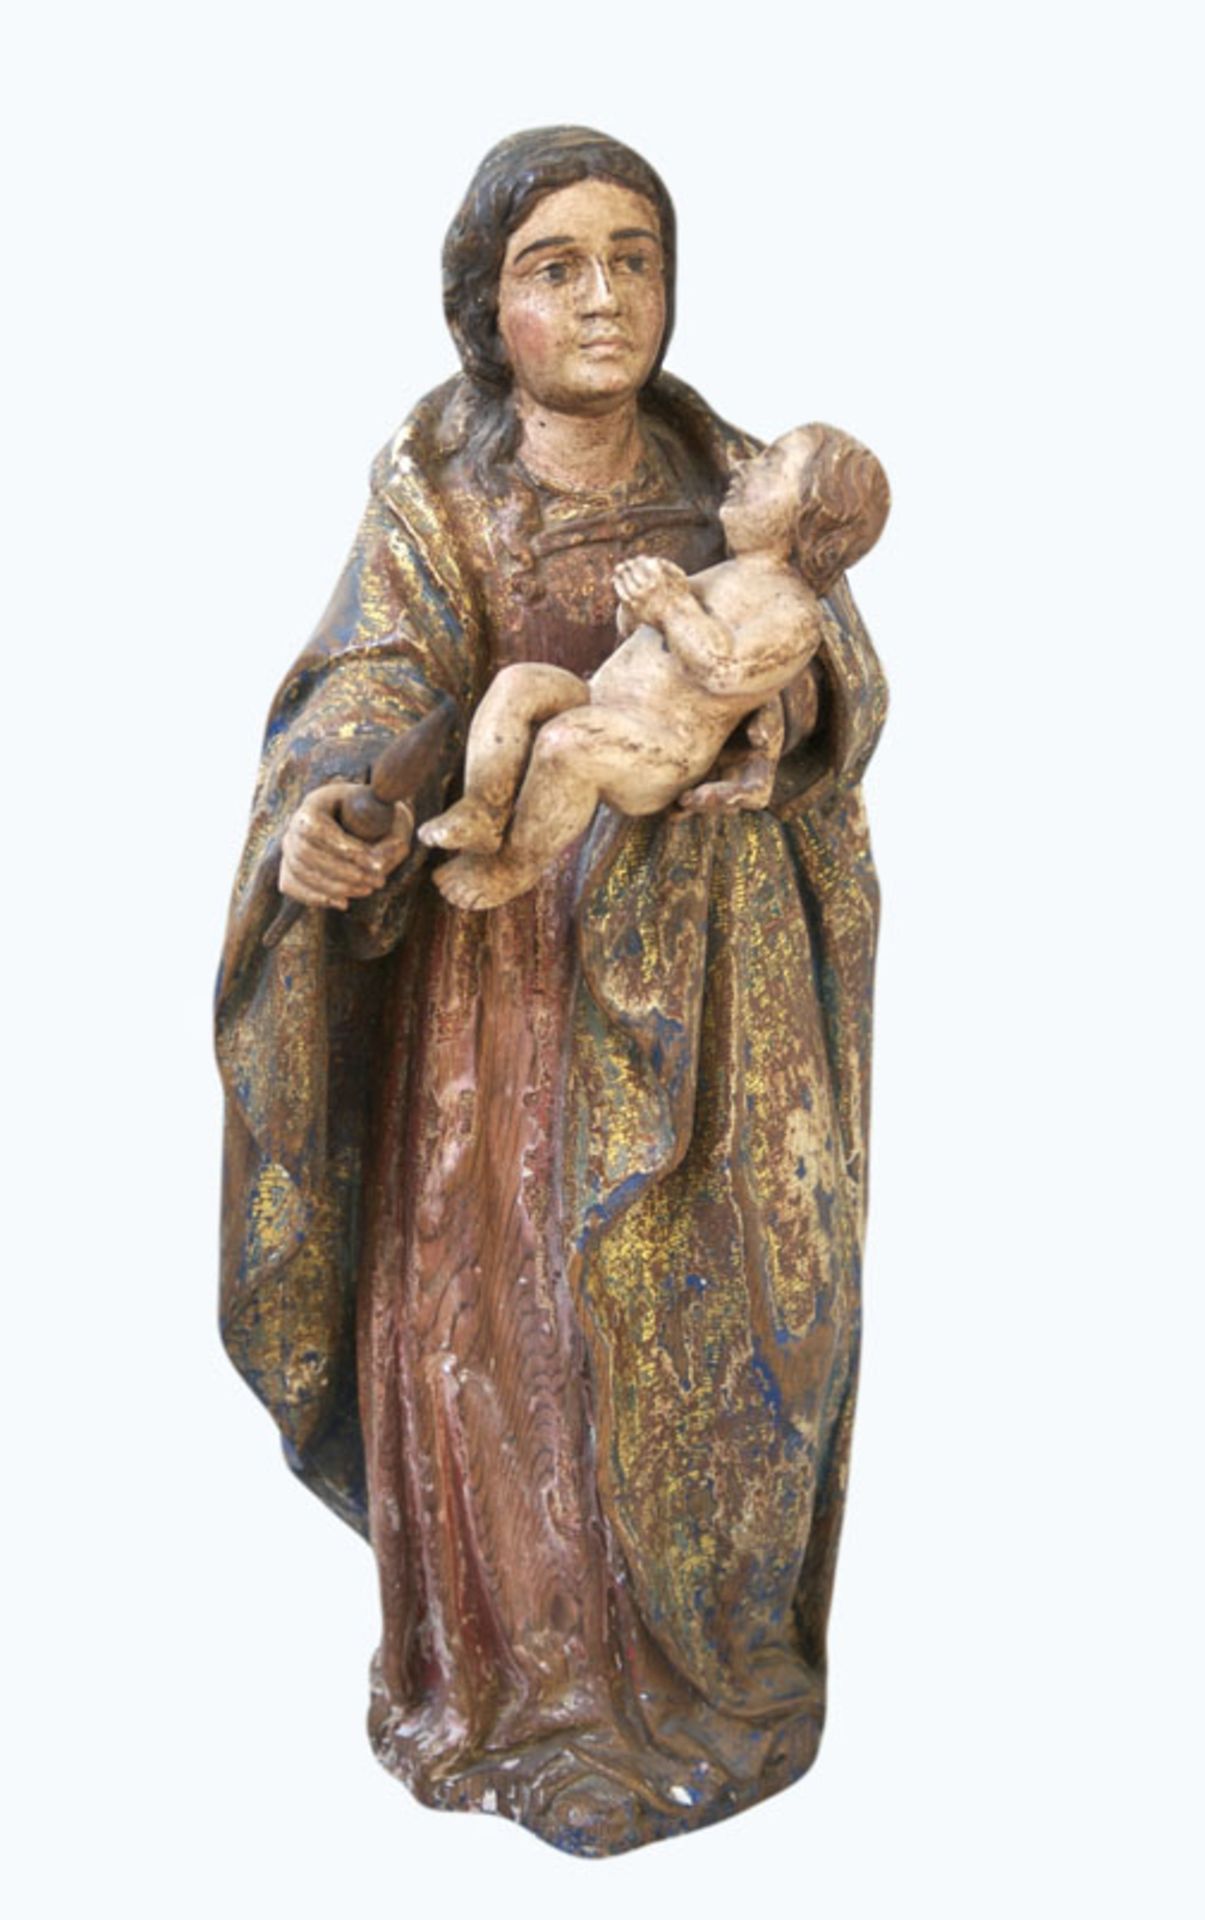 Heiligenstatue mit Kind und Stab. Holz, koloriert und goldgefasst. Um 1850 (?). 42 x 17 x 15 cm (